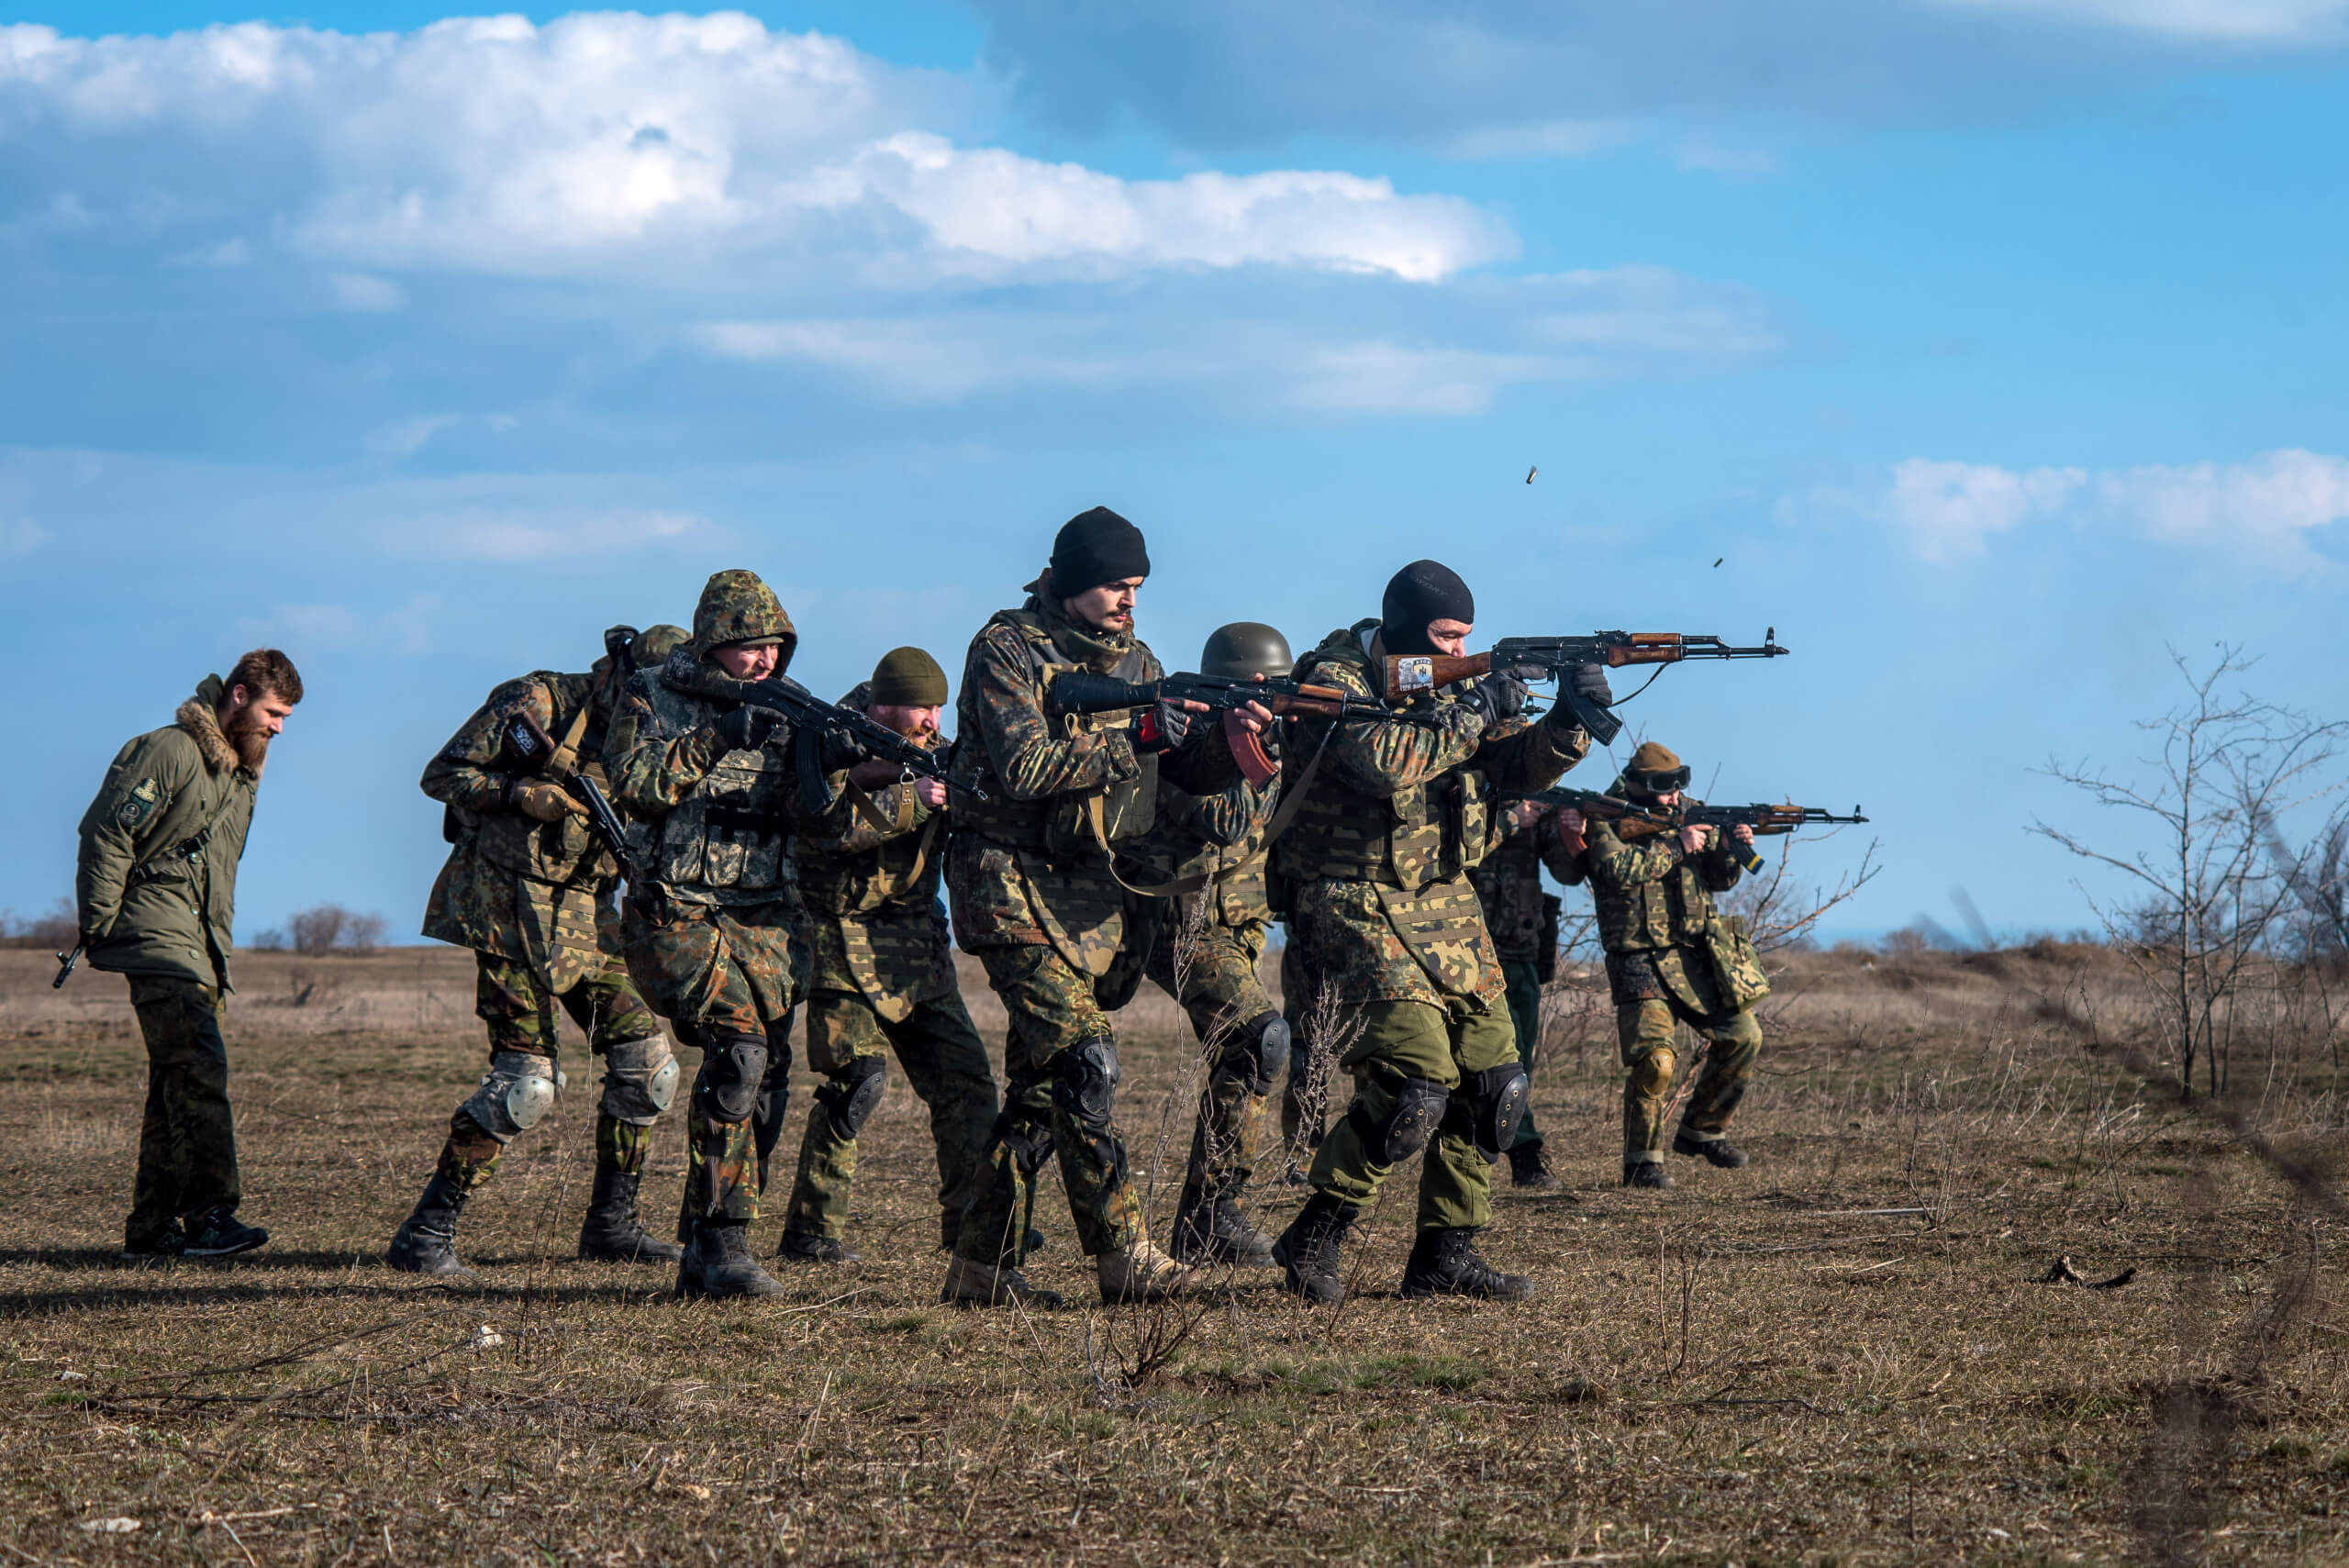 Soldaten des Asow-Regiments während einer militärischen Übung in der Nähe der Hafenstadt Mariupol im Jahr 2015 (Quelle: Picture Alliance / DPA / James Sprankle)